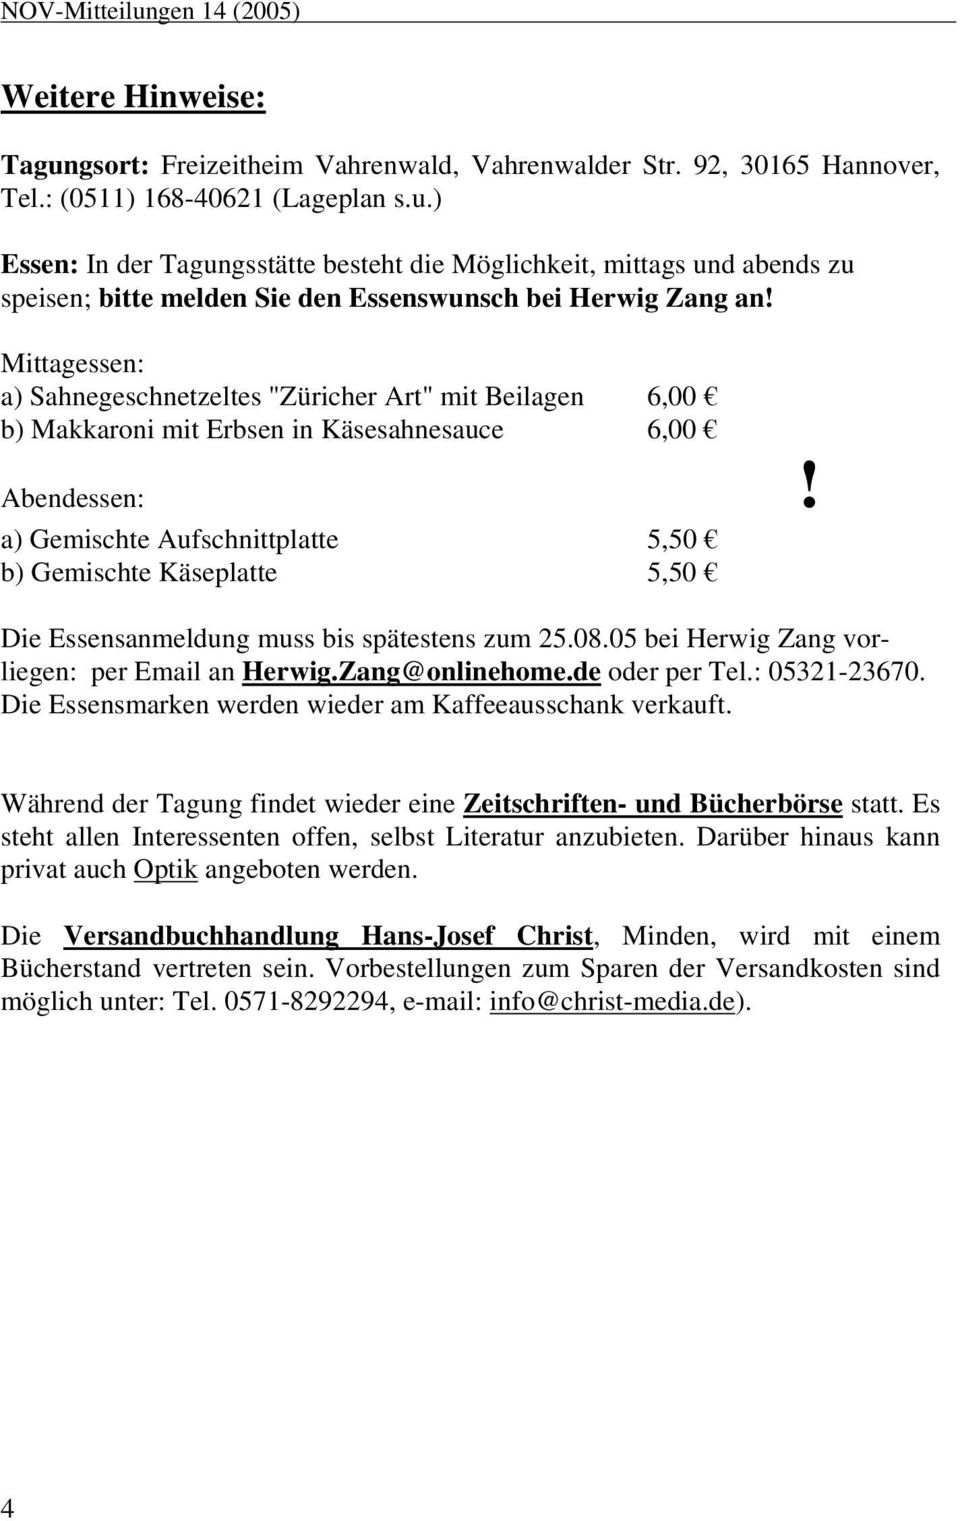 a) Gemischte Aufschnittplatte 5,50 b) Gemischte Käseplatte 5,50 Die Essensanmeldung muss bis spätestens zum 25.08.05 bei Herwig Zang vorliegen: per Email an Herwig.Zang@onlinehome.de oder per Tel.